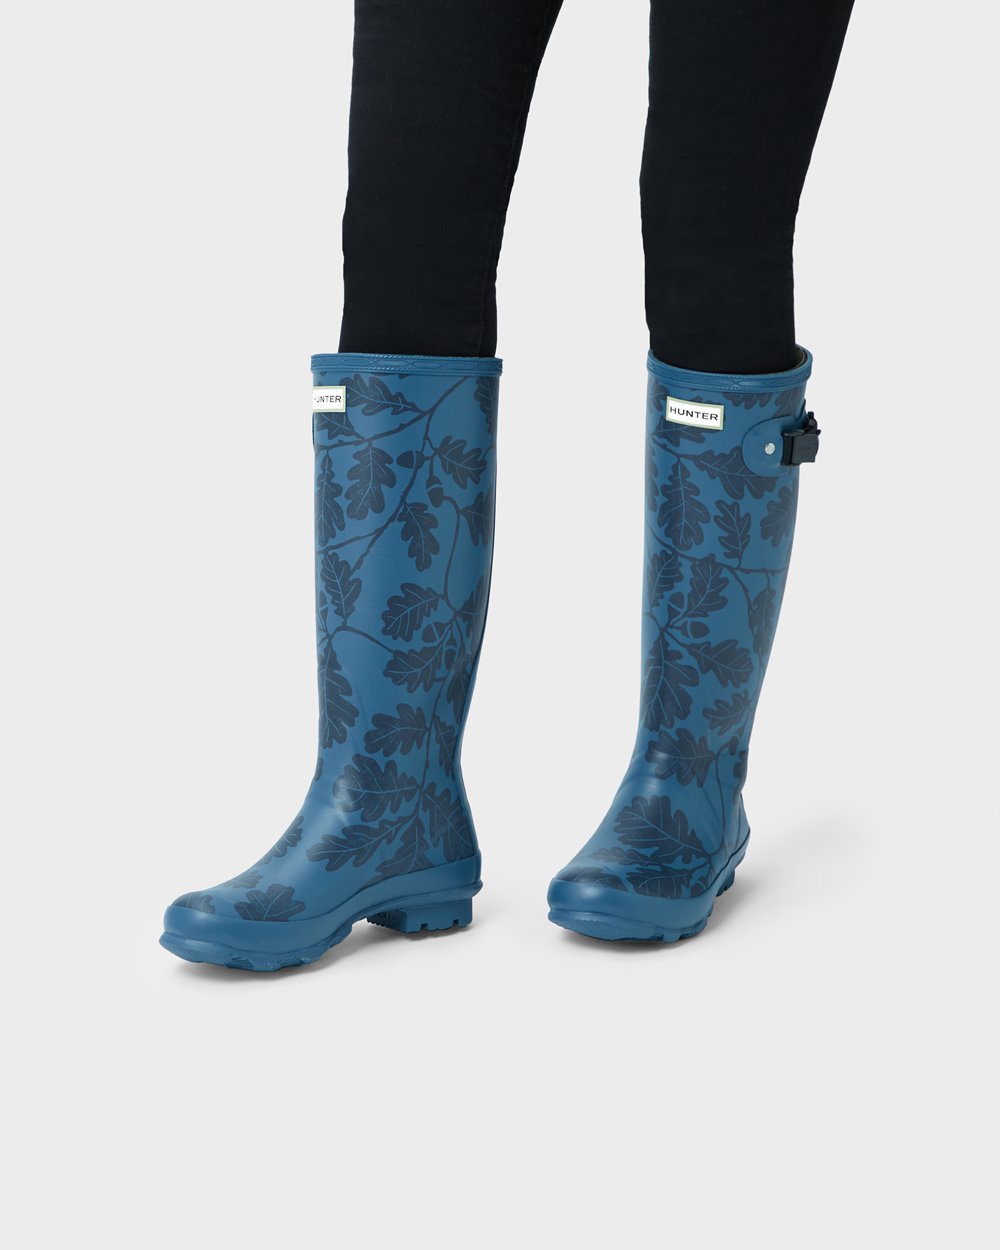 Womens Tall Rain Boots - Hunter National Trust Print Norris Field (21ESVDPMR) - Blue